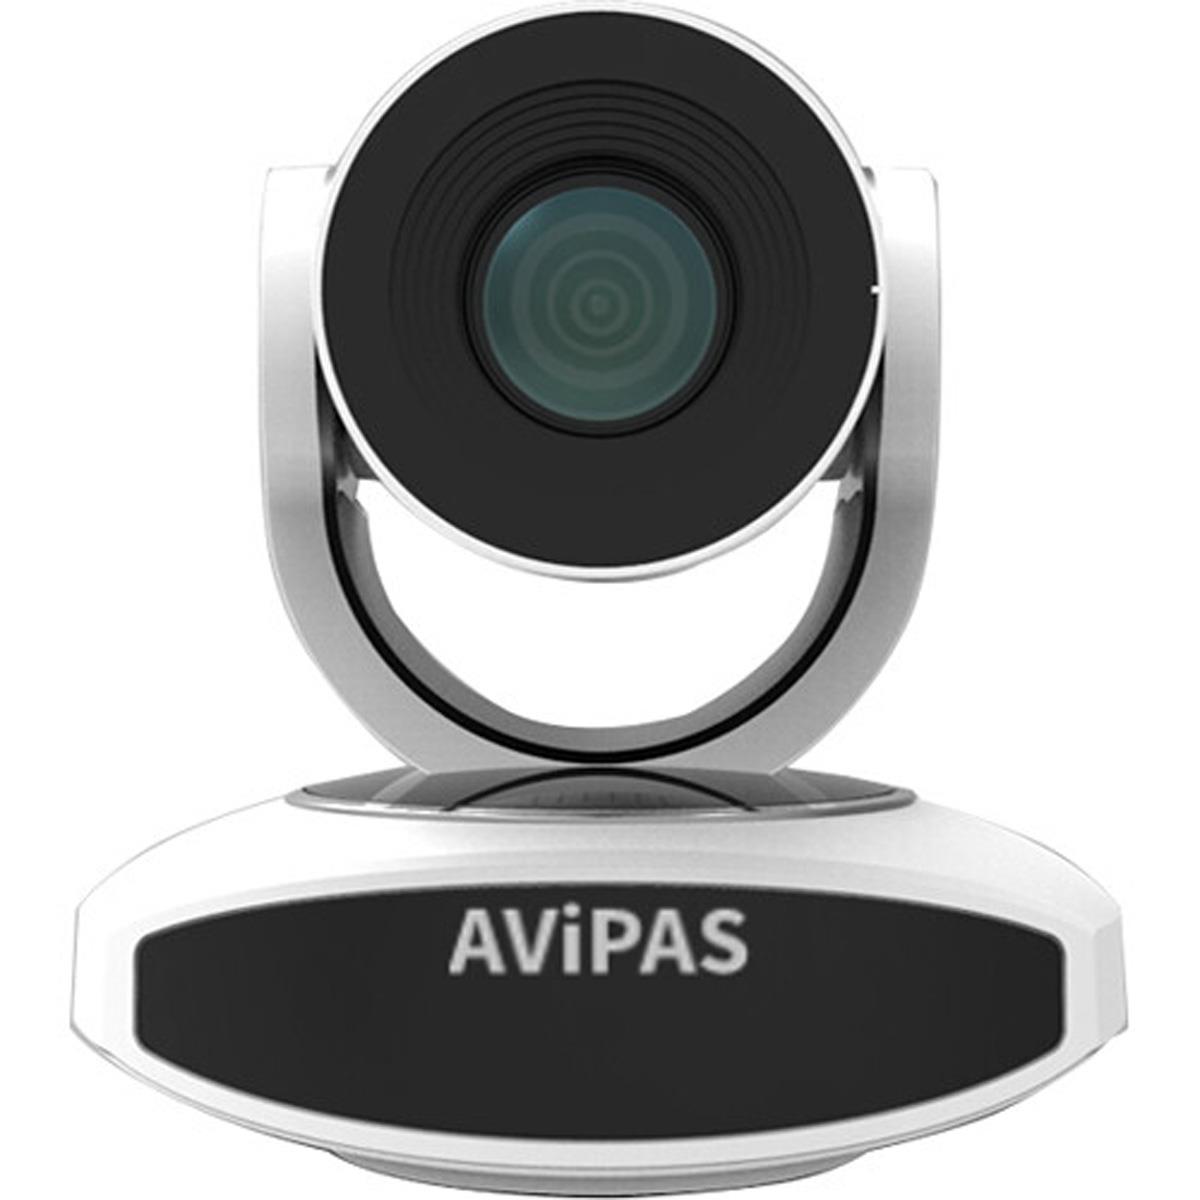 Image of AViPAS AV-1251 2.07MP Full HD HDMI PTZ Camera with PoE